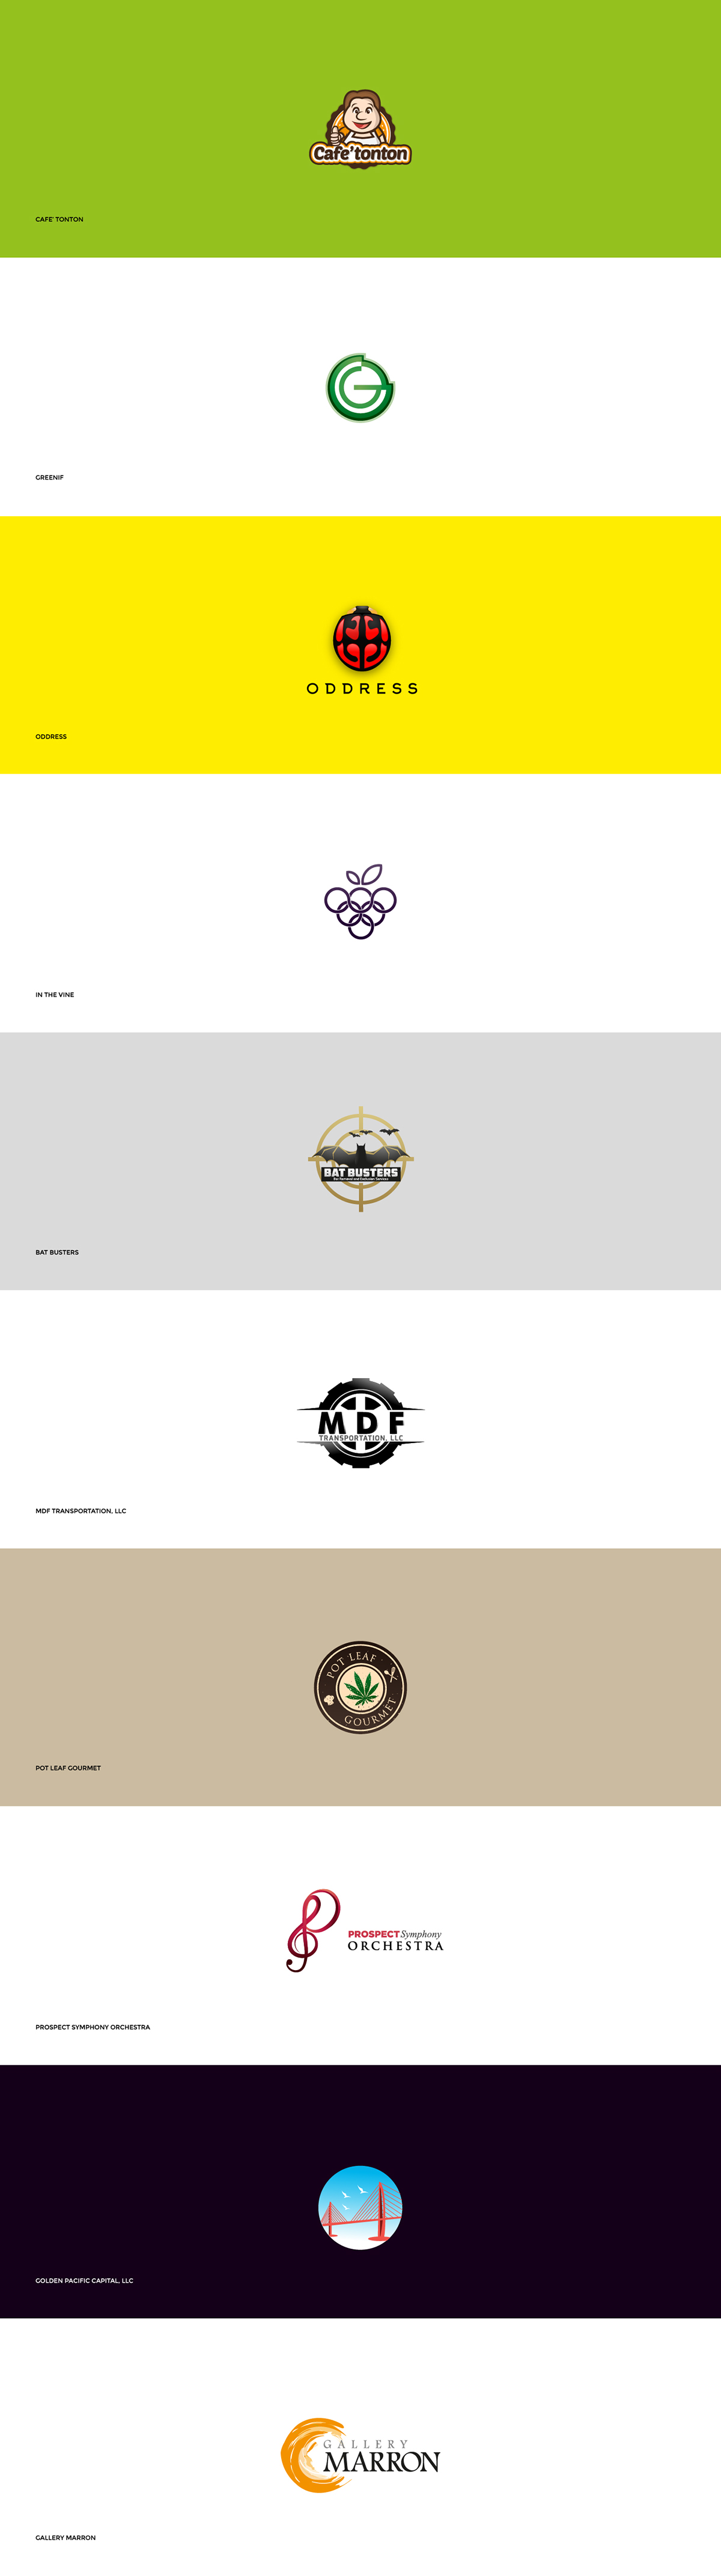 logo logos logo collection cafe Technology design Logo Design identity